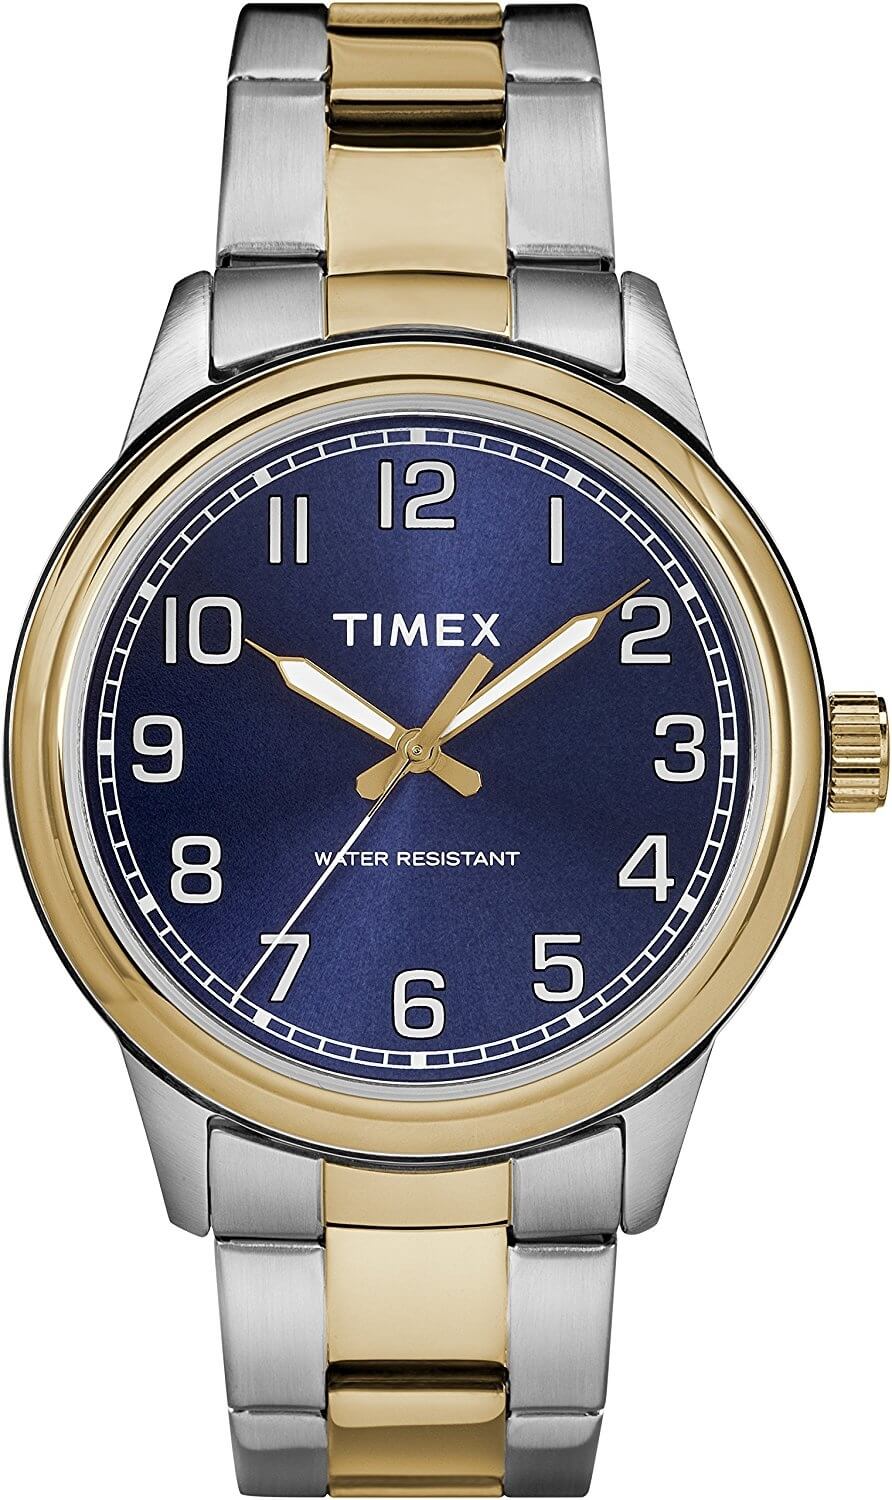 Timex New England TW2R36600